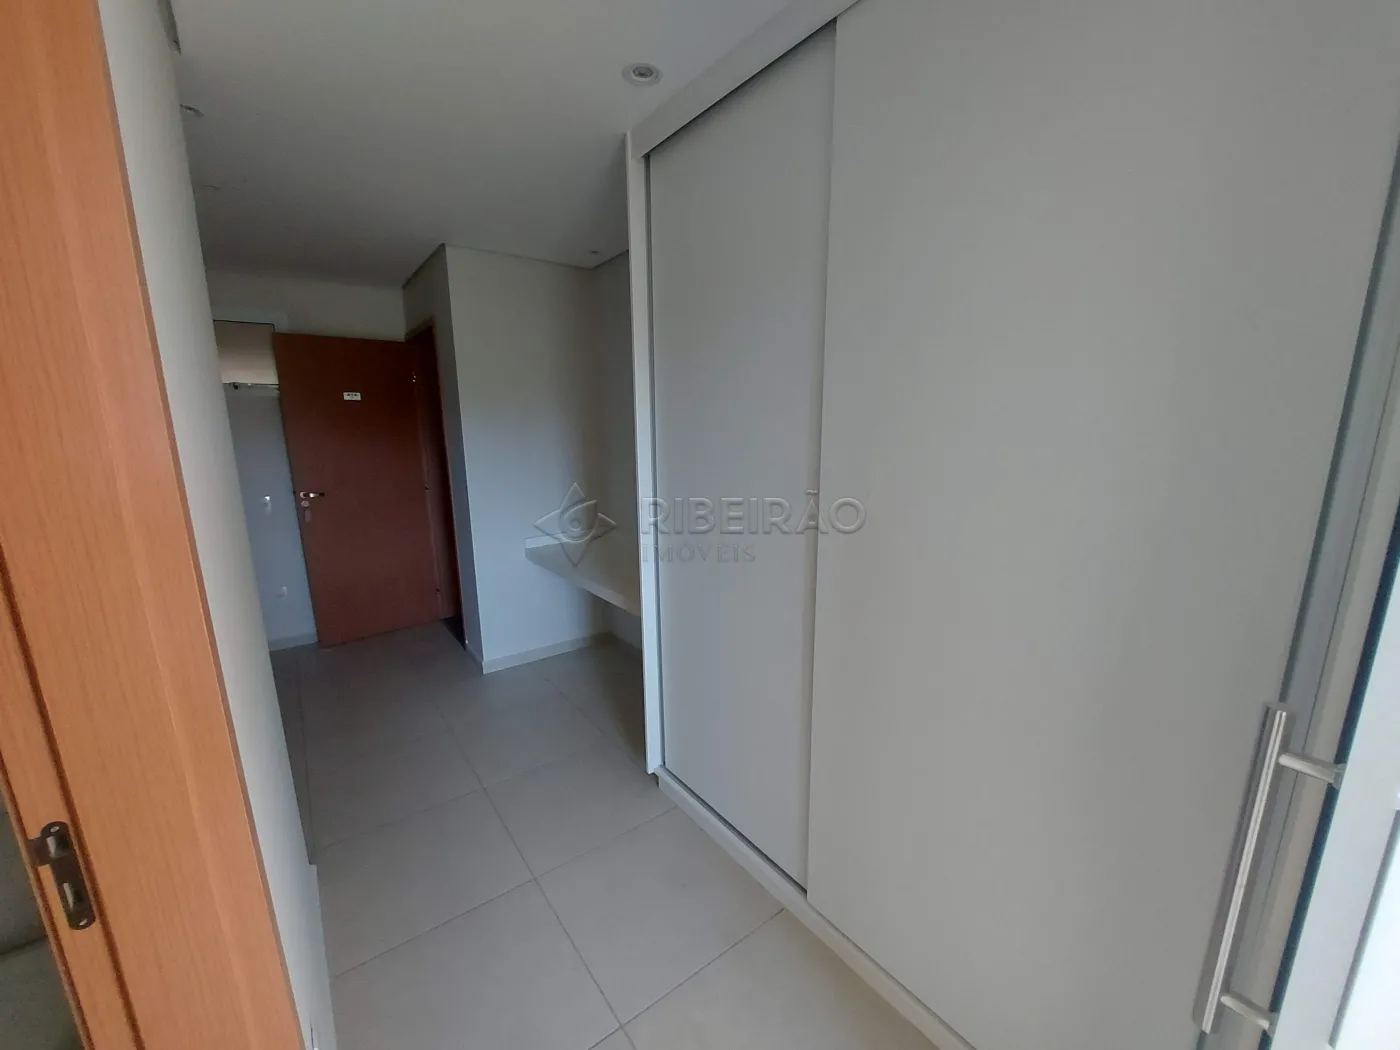 Alugar Apartamento / Flat / Loft / Kitnet em Ribeirão Preto R$ 1.500,00 - Foto 5